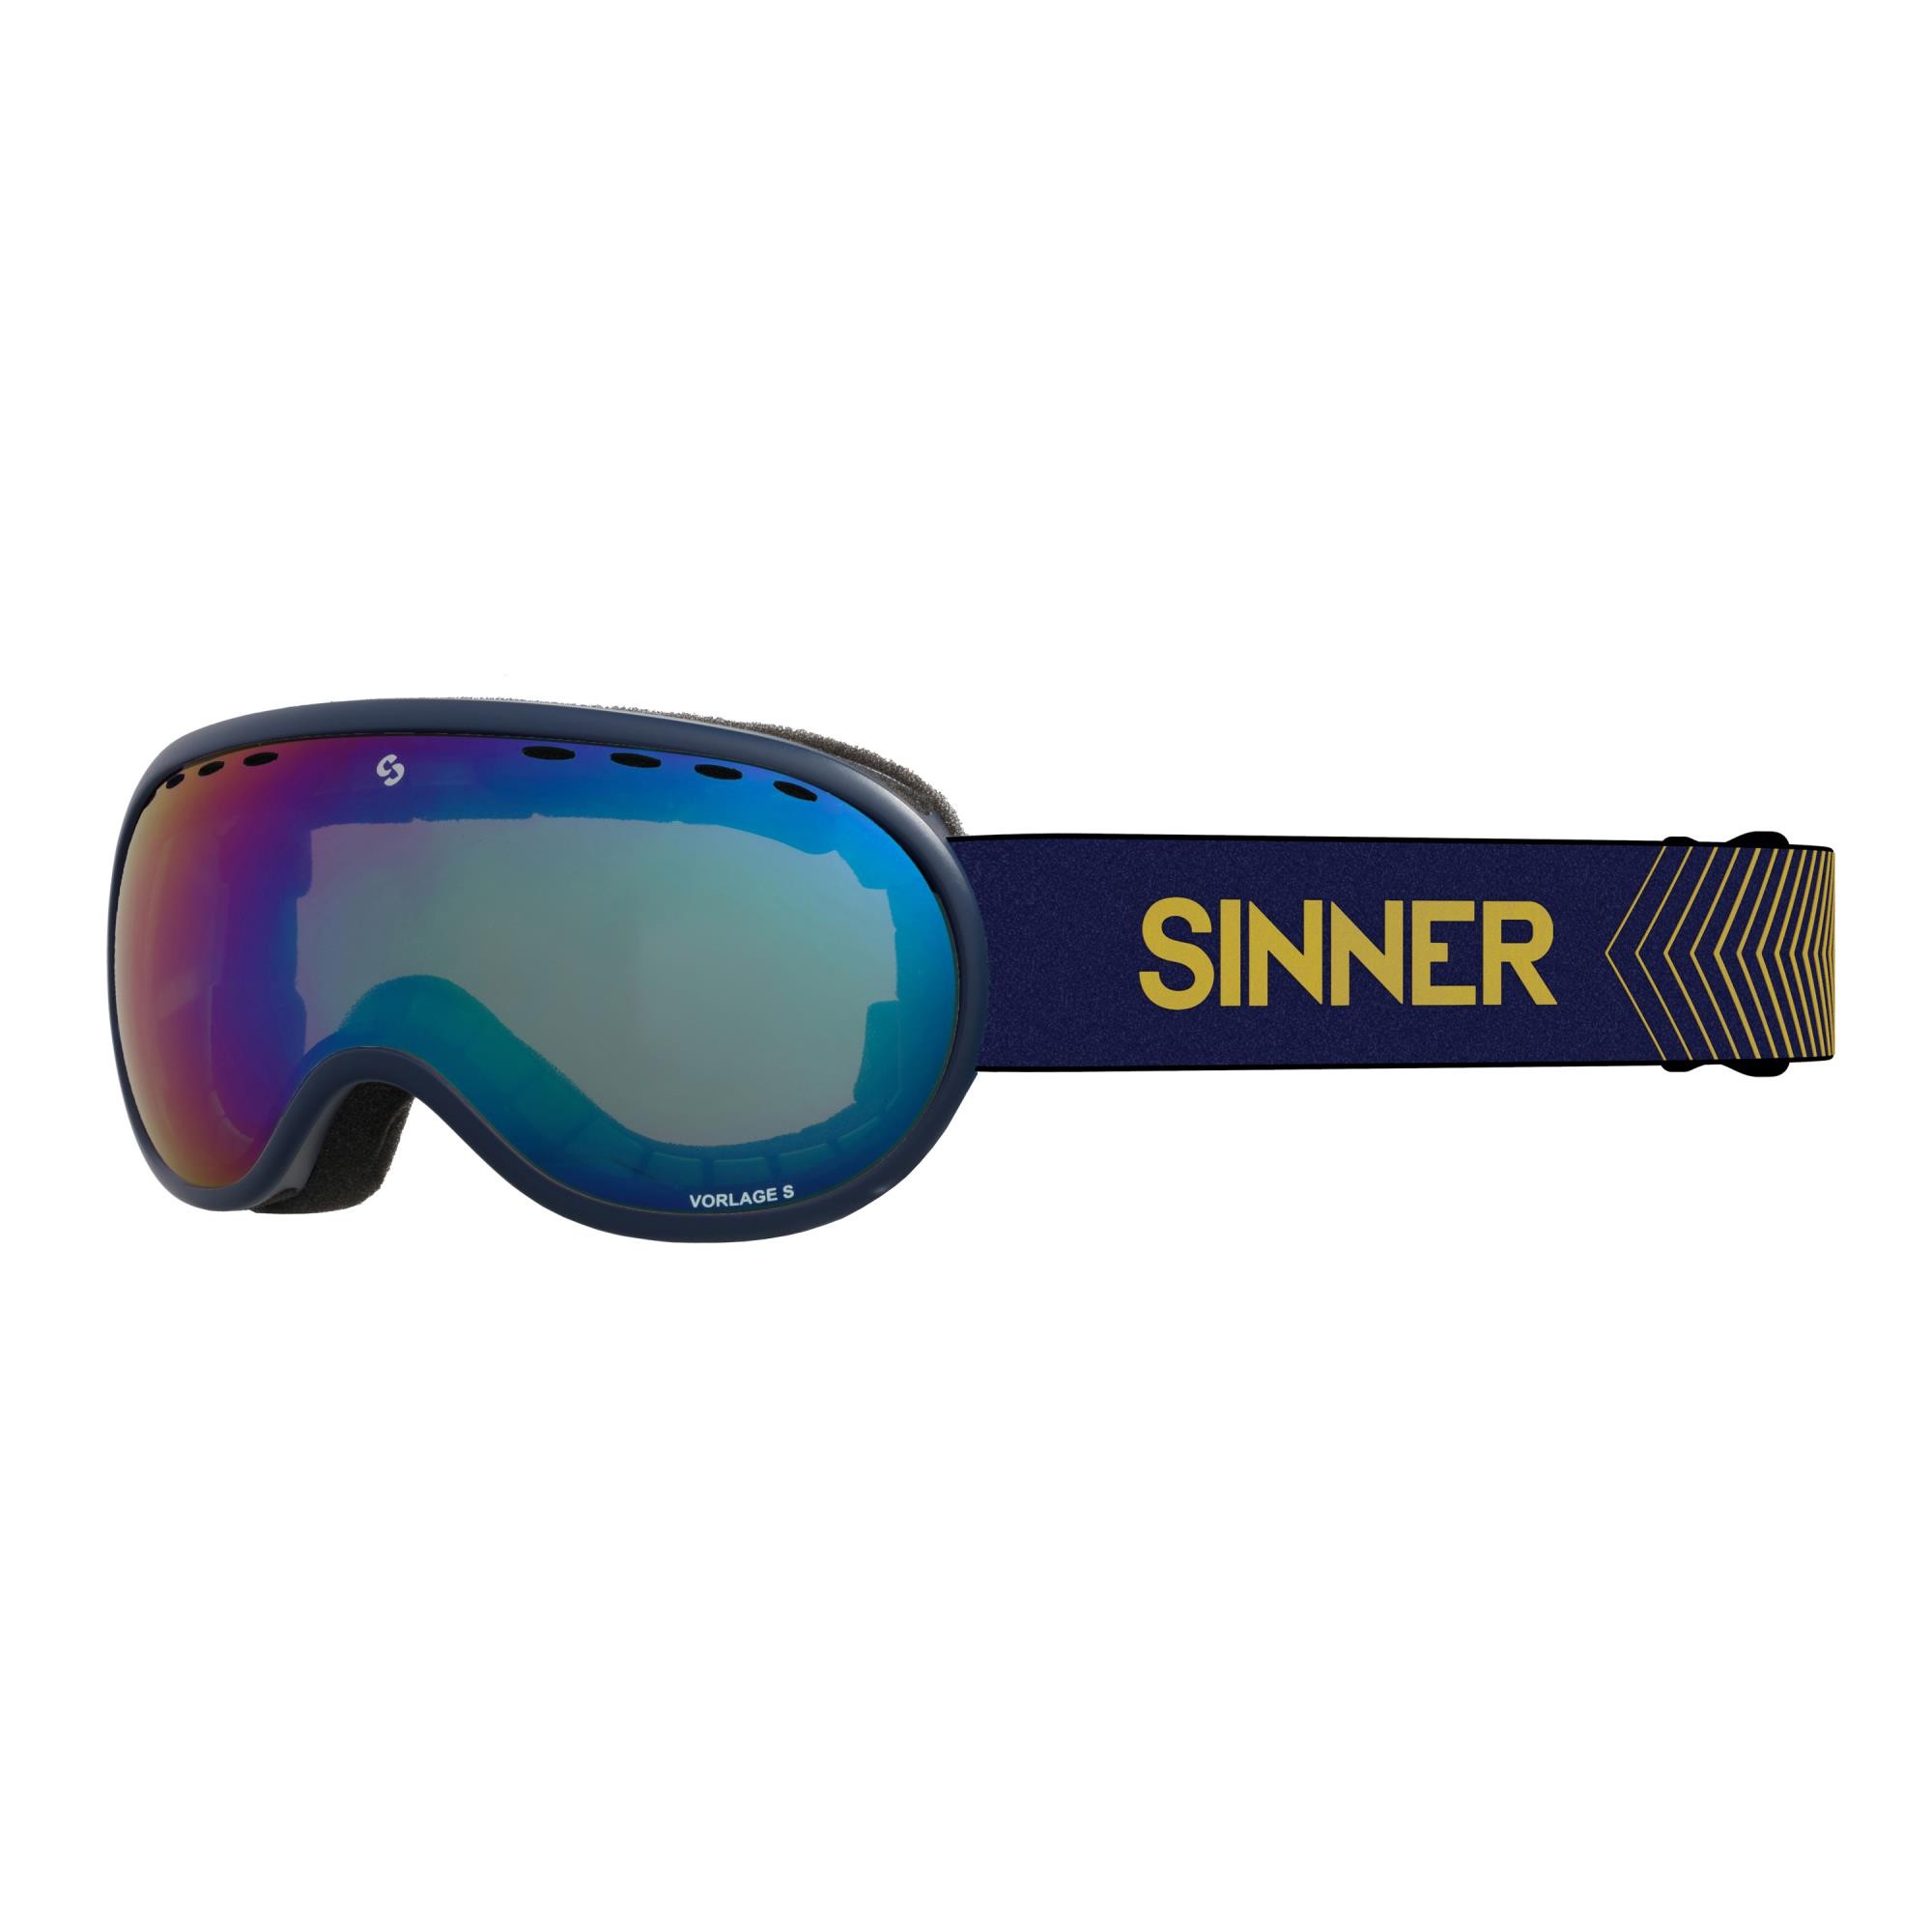 SINNER Vorlage Skibril - Donkerblauw - Blauwe Spiegellens